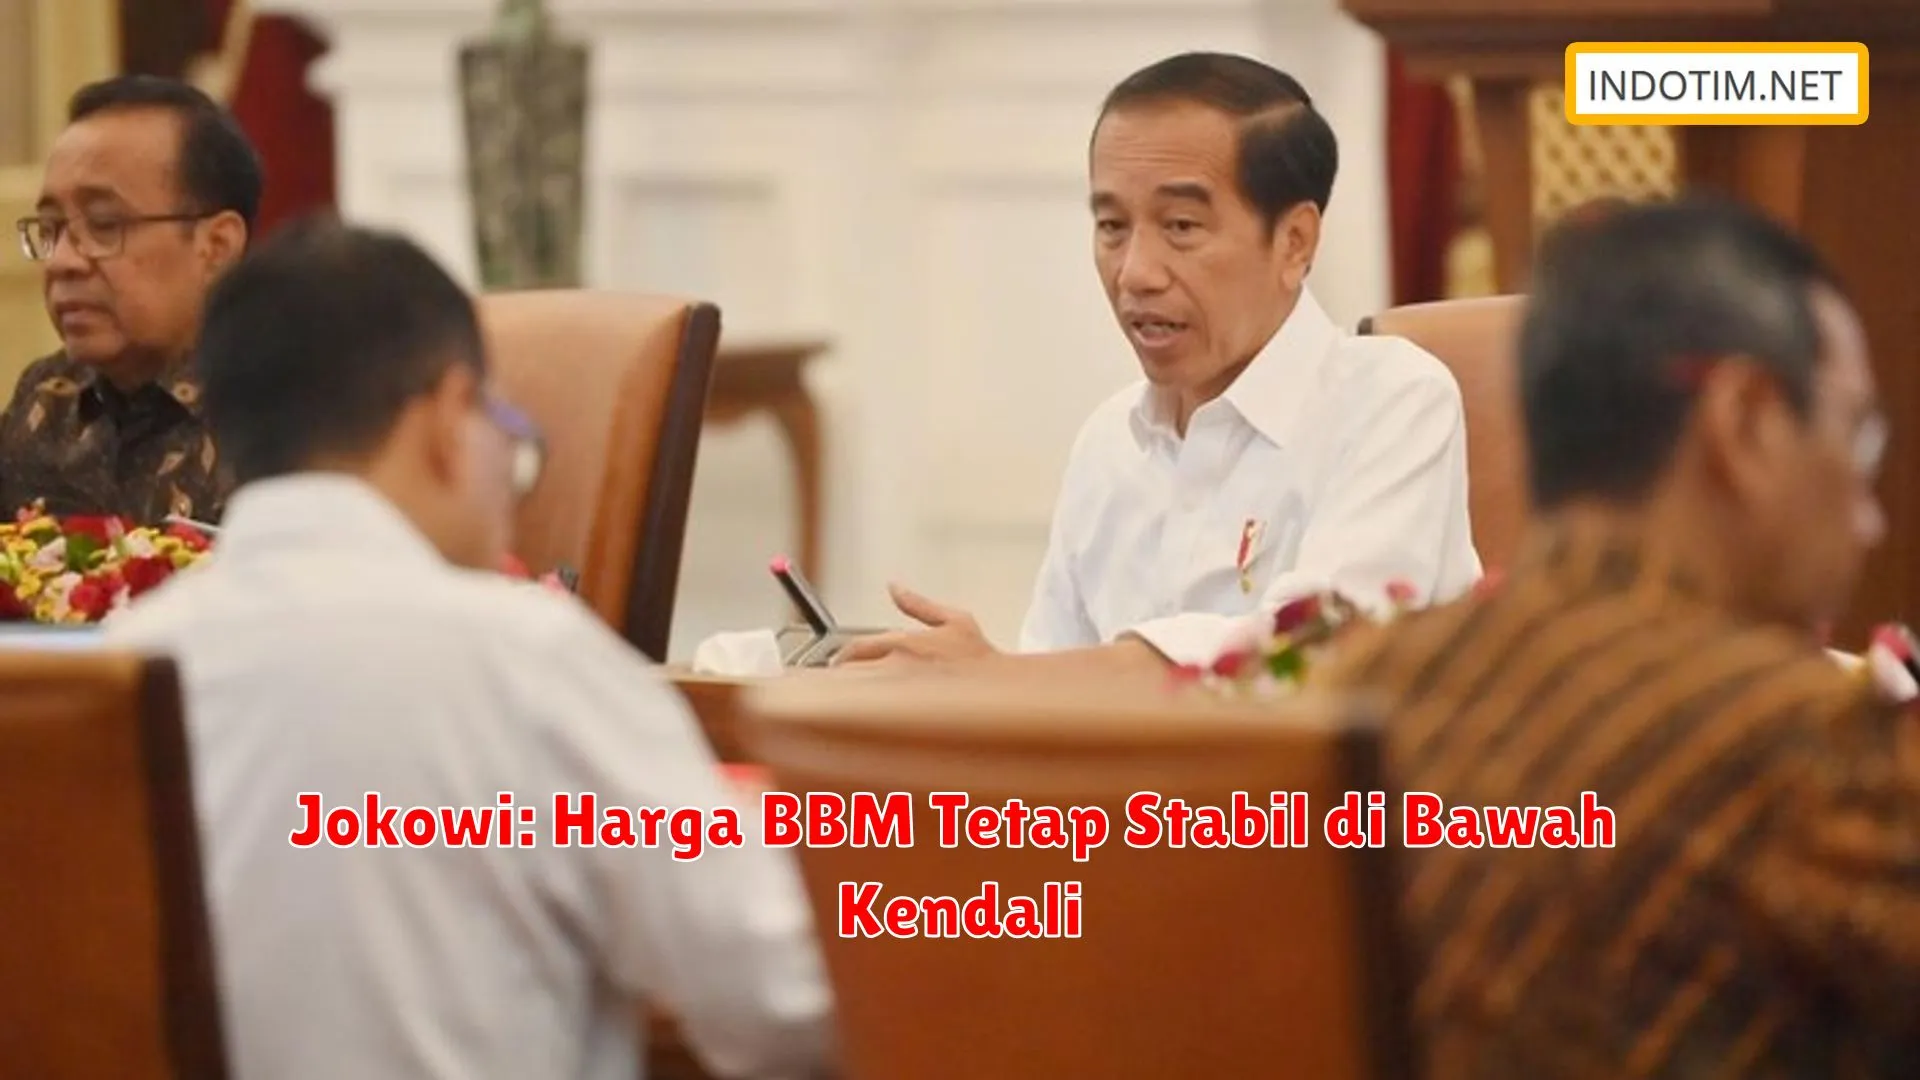 Jokowi: Harga BBM Tetap Stabil di Bawah Kendali